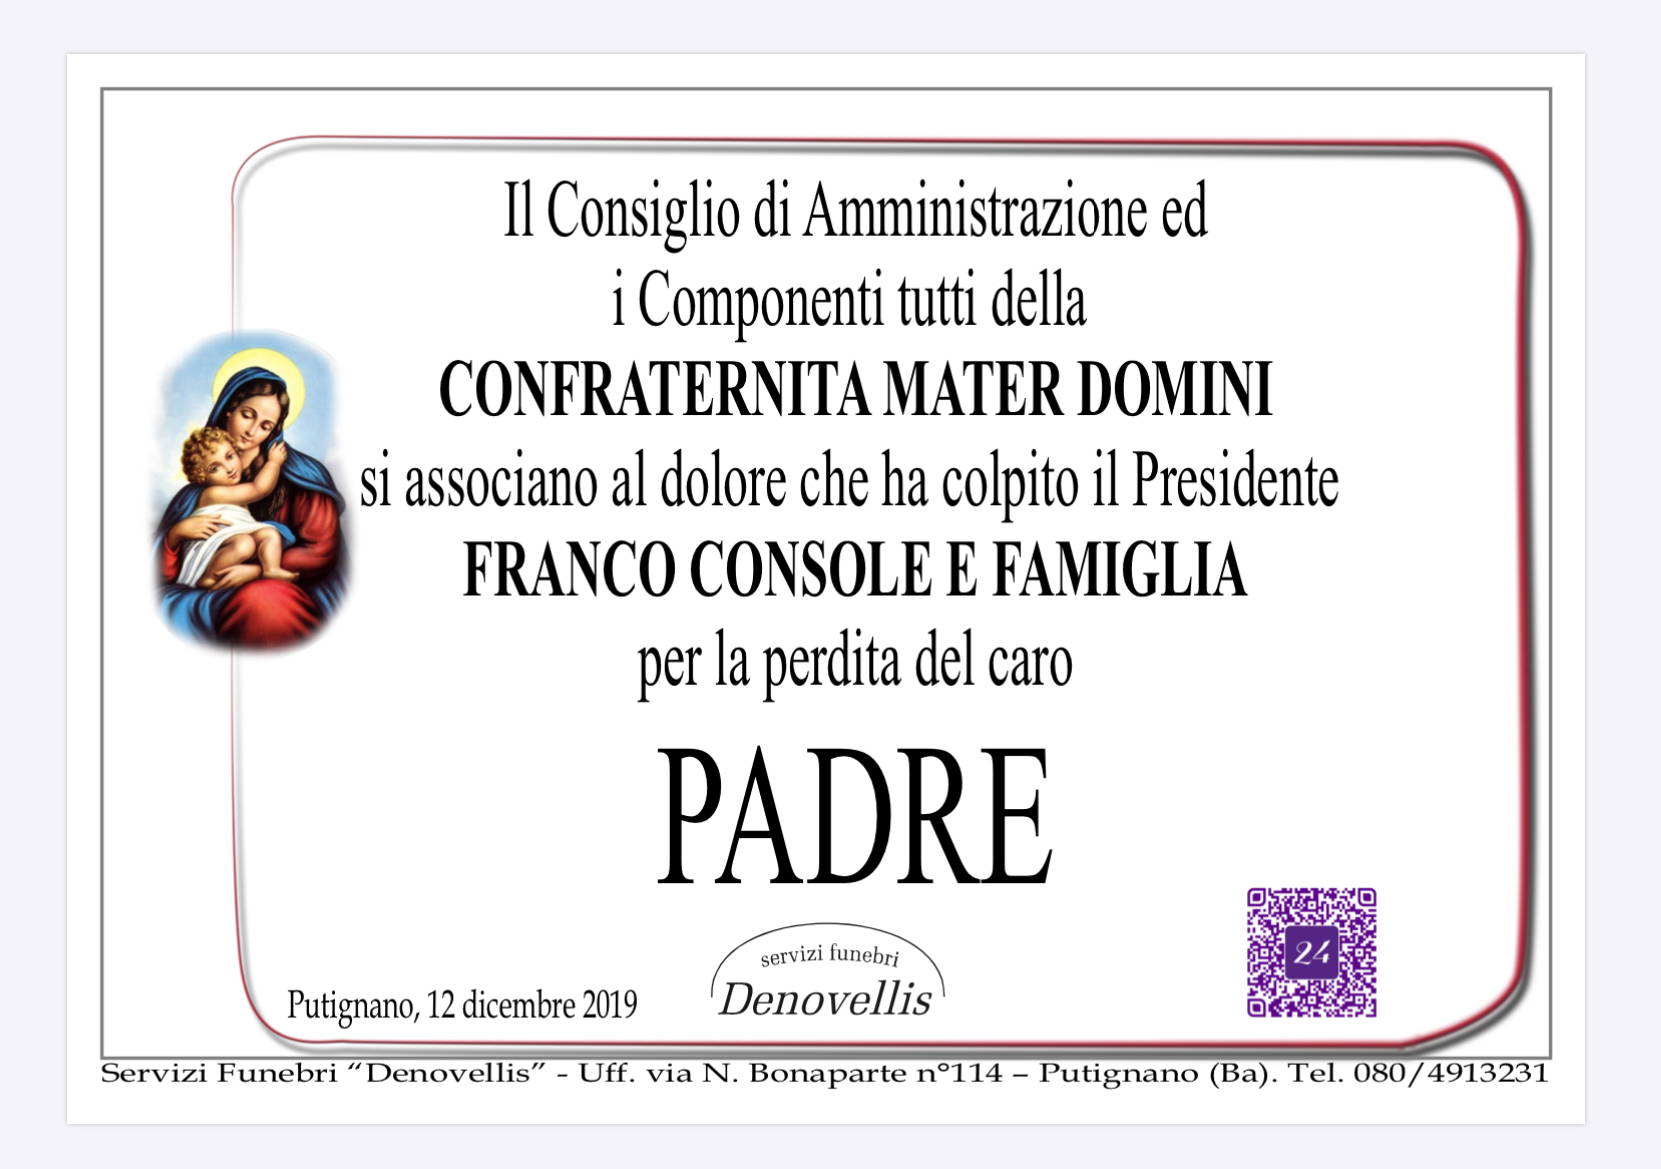 Confraternita Mater Domini